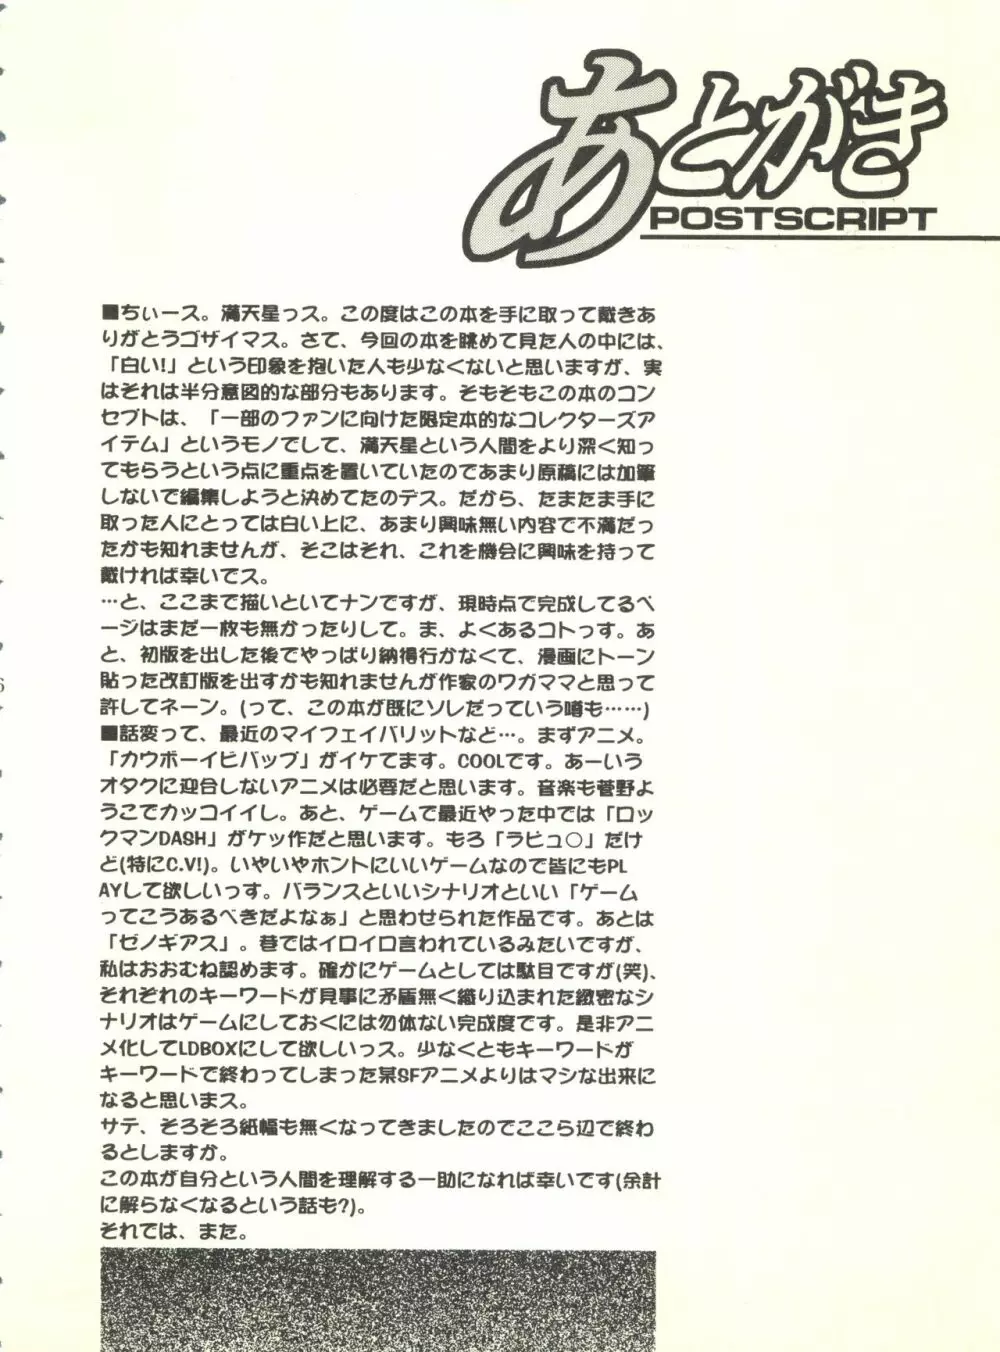 満天星初期作品集 「つつじミュージアム」 96ページ